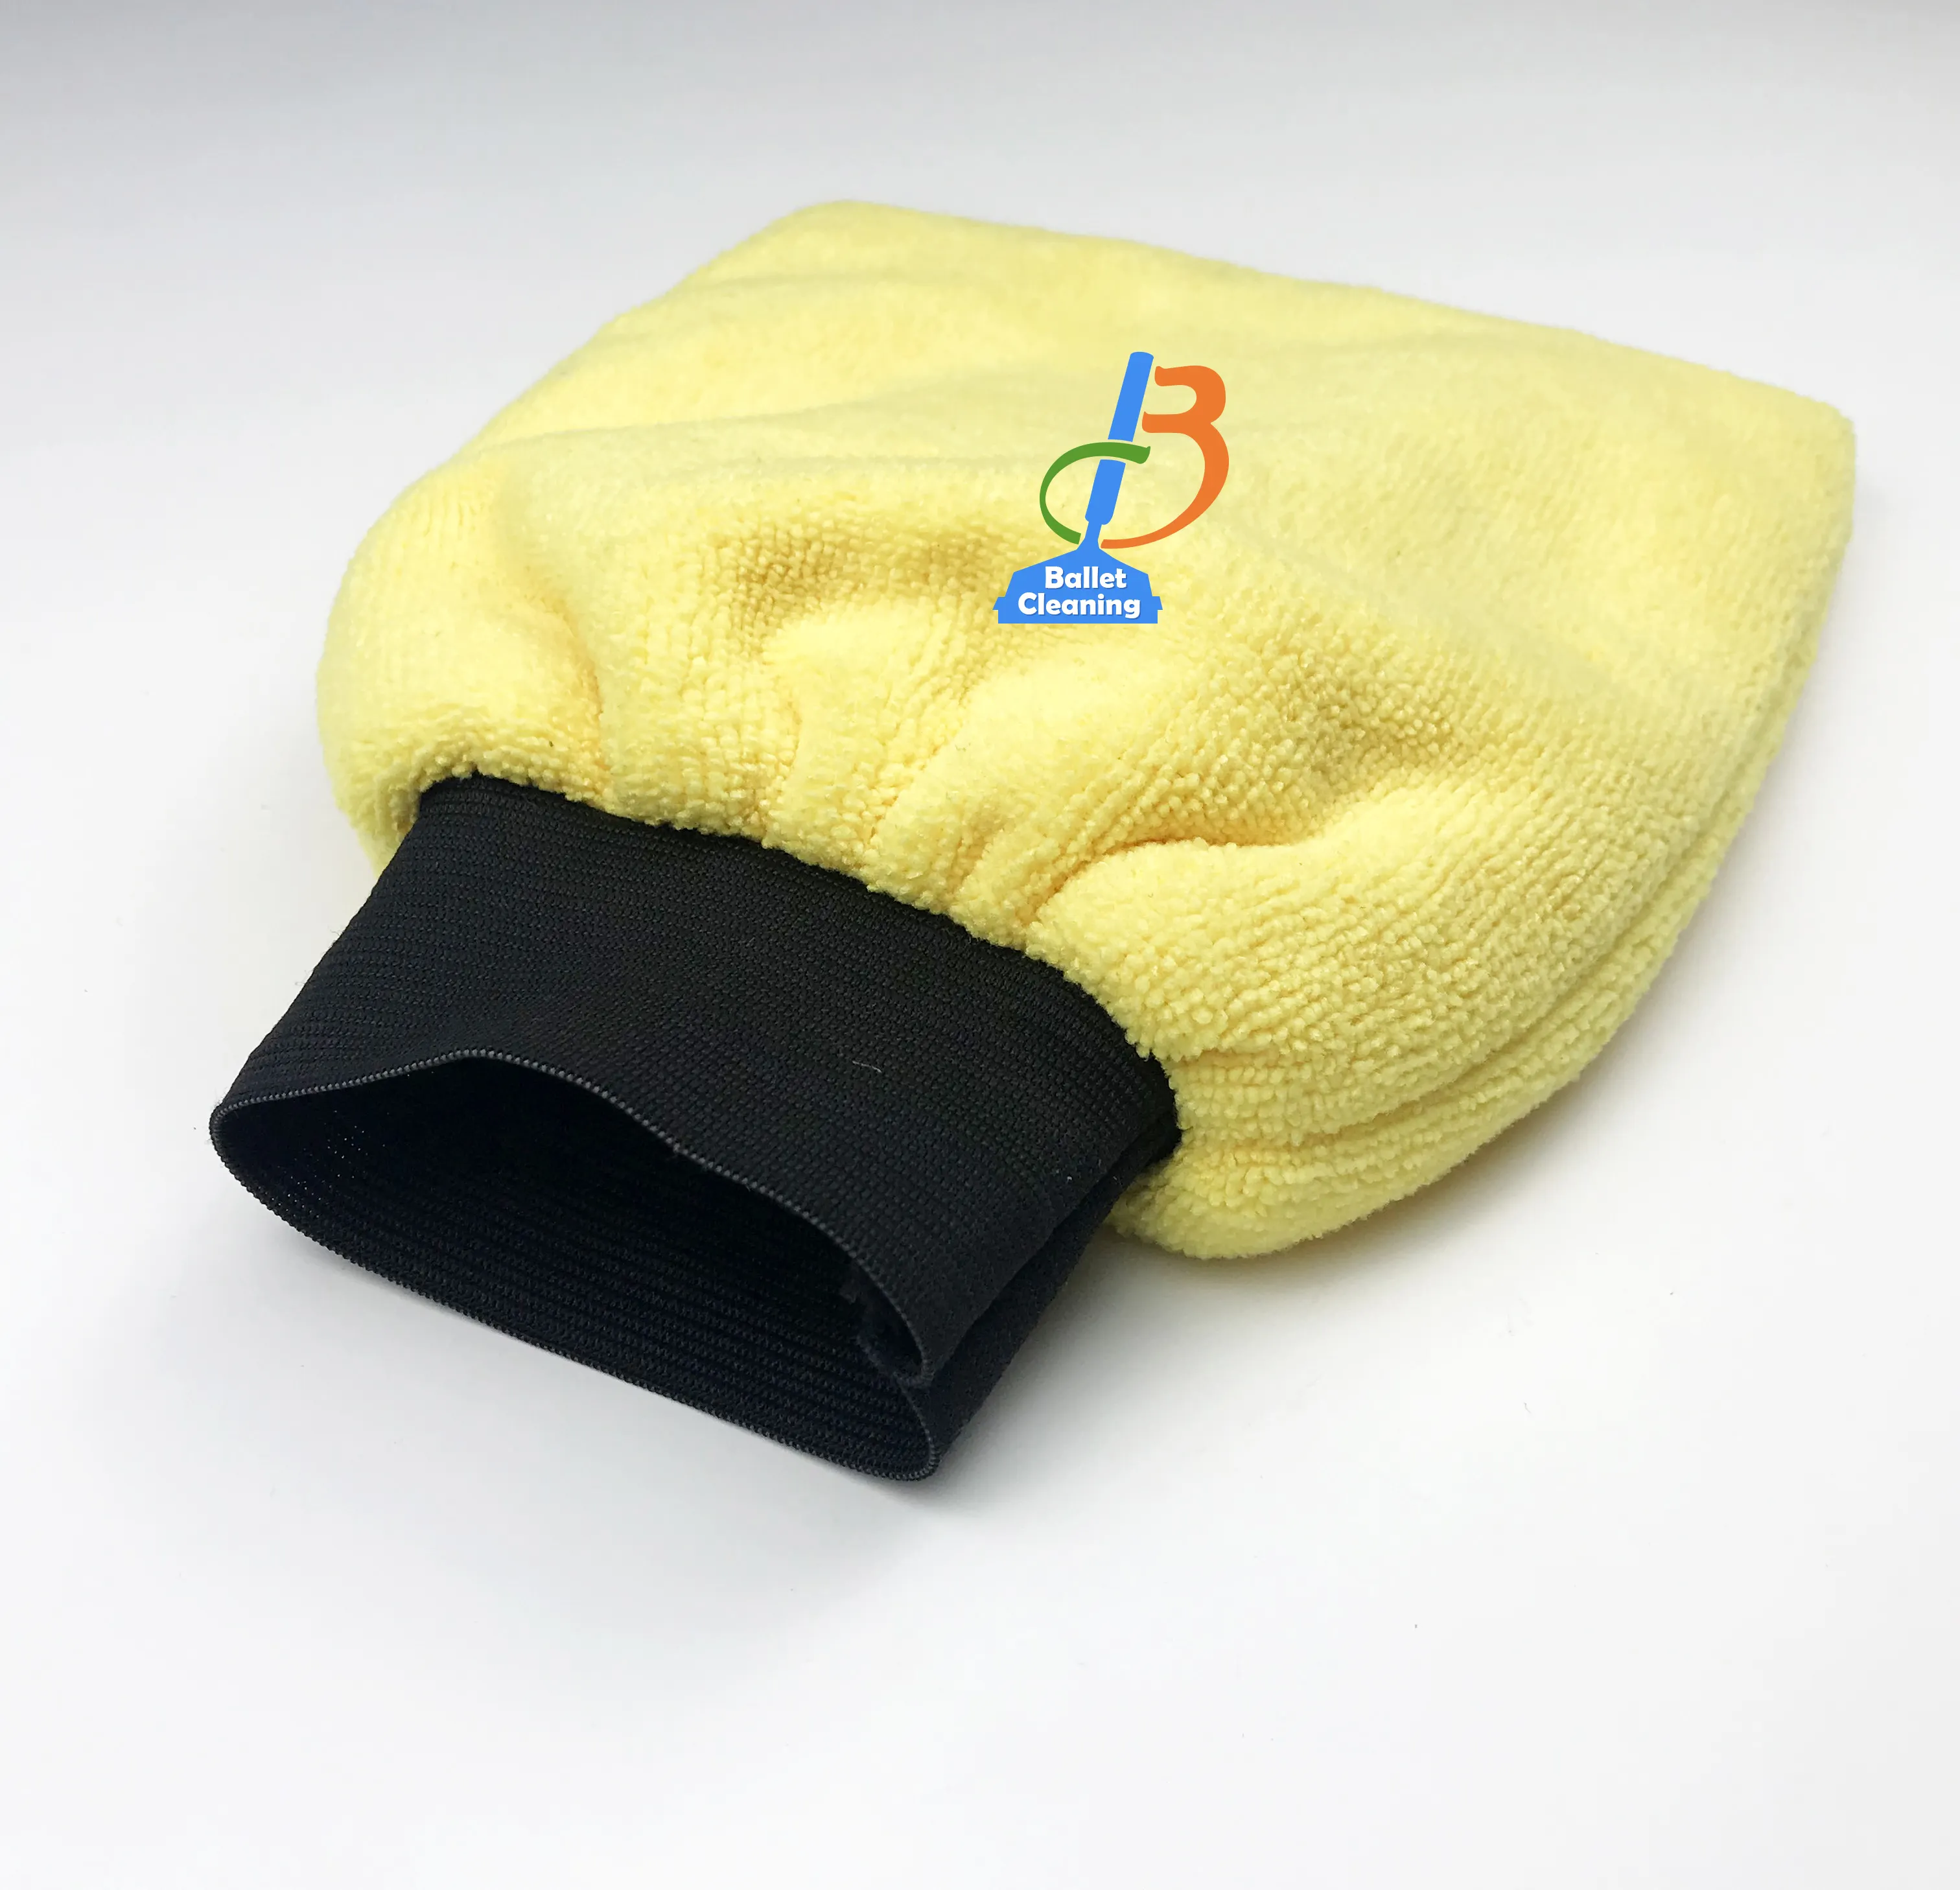 Asciugamano in tessuto in microfibra strumenti per la pulizia dell'auto detergenti per guanti per autolavaggio guanti in microfibra per lavare i piatti guanti per autolavaggio guanto